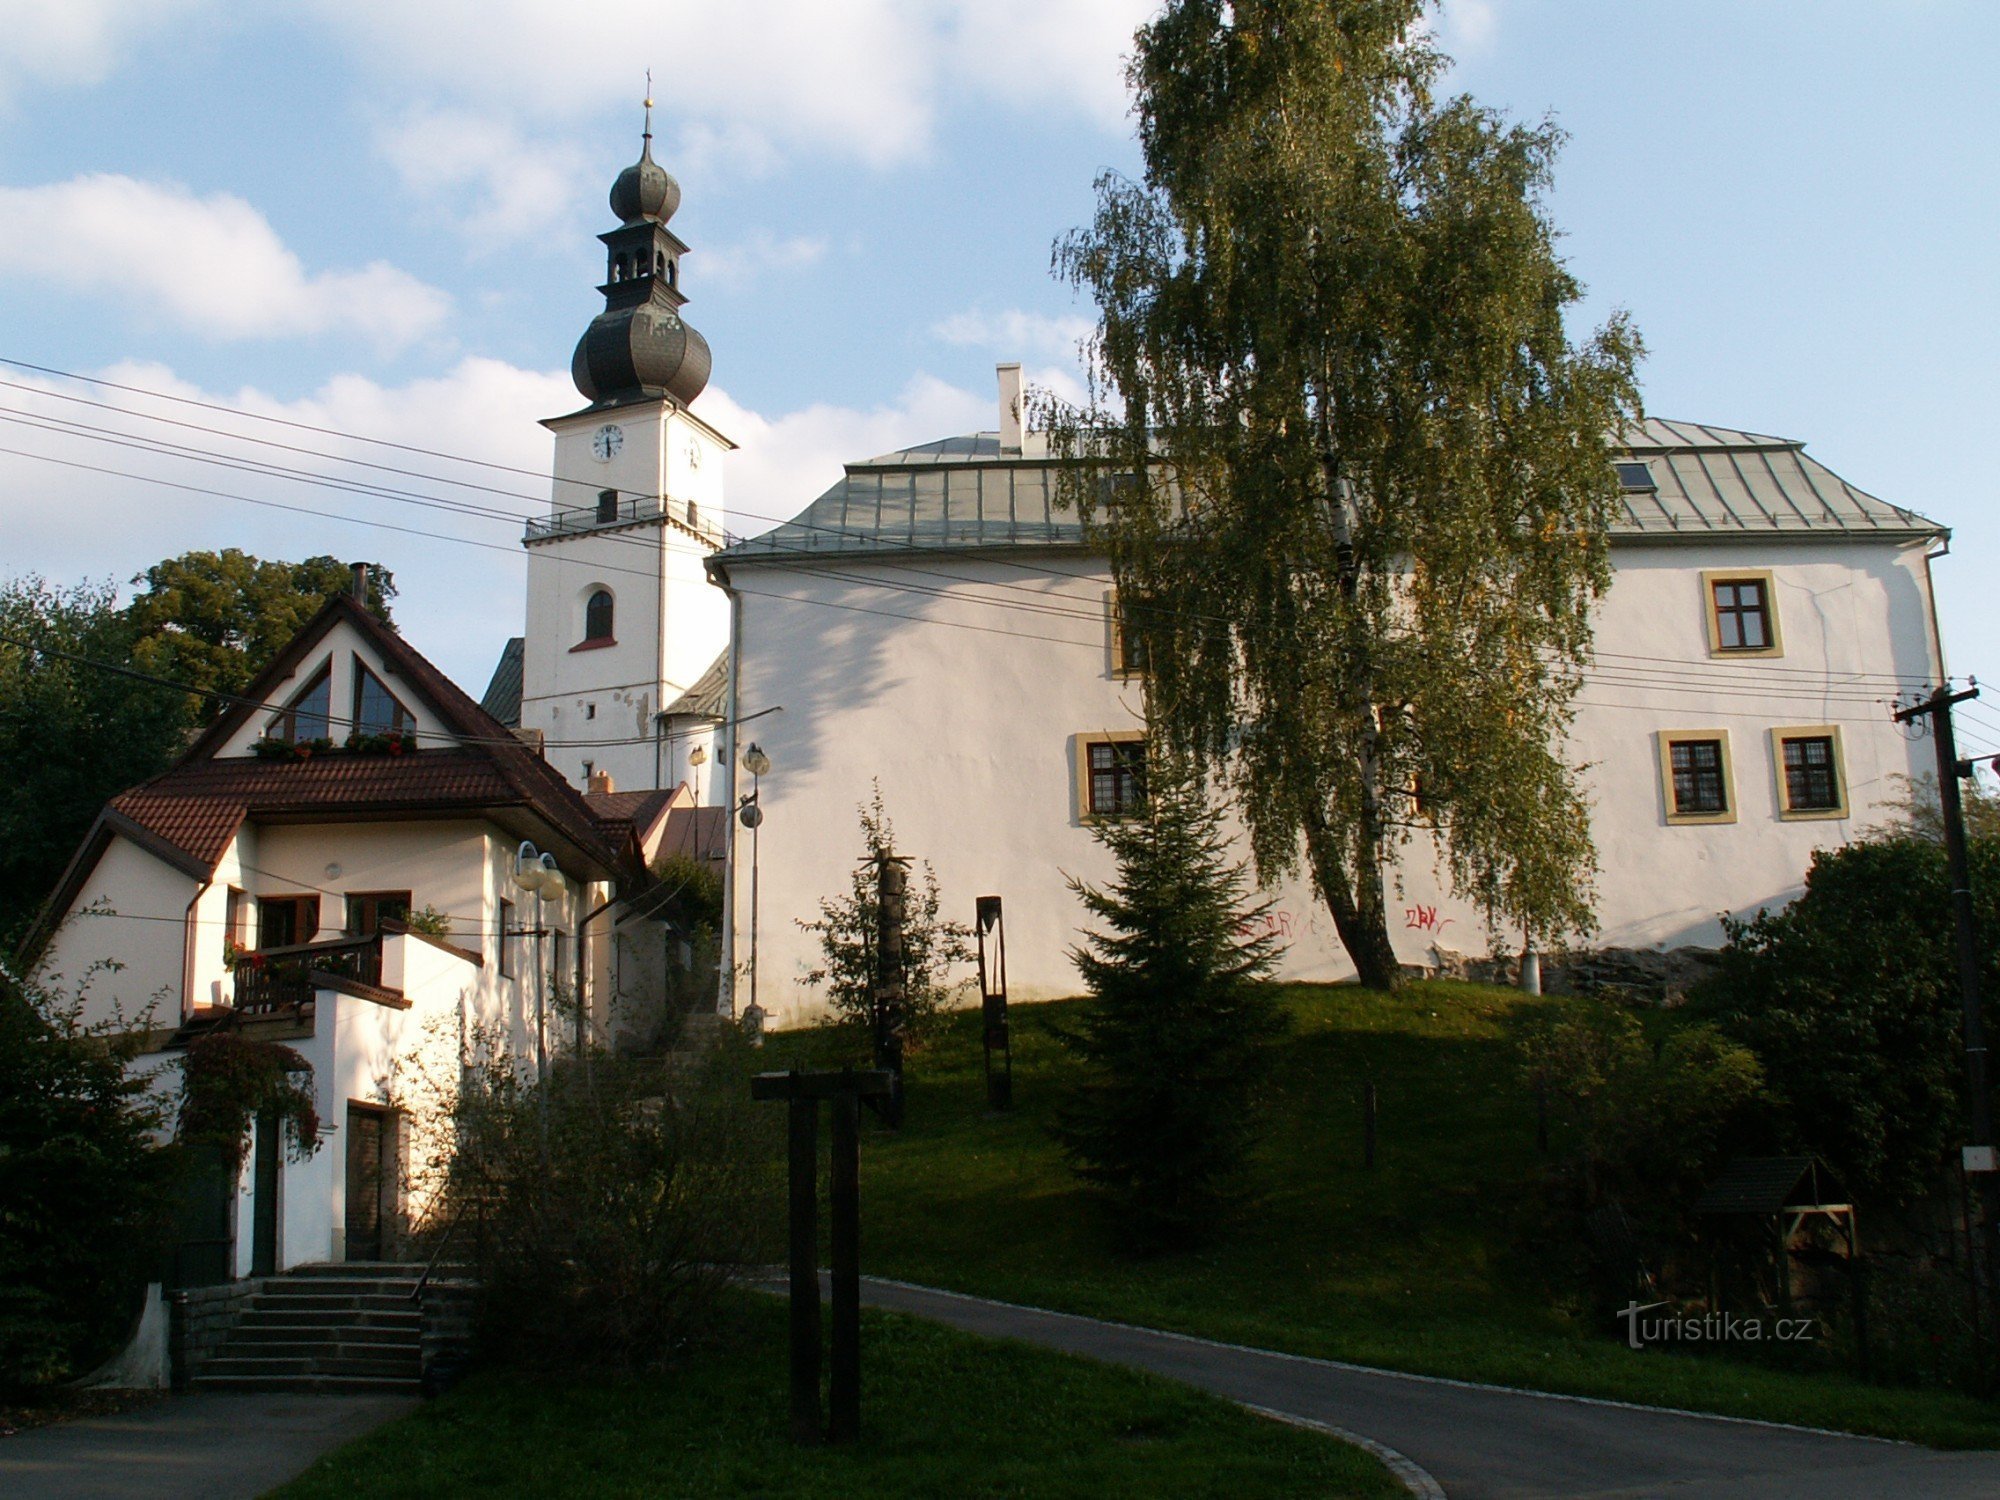 Pháo đài nhìn từ sông Sázava